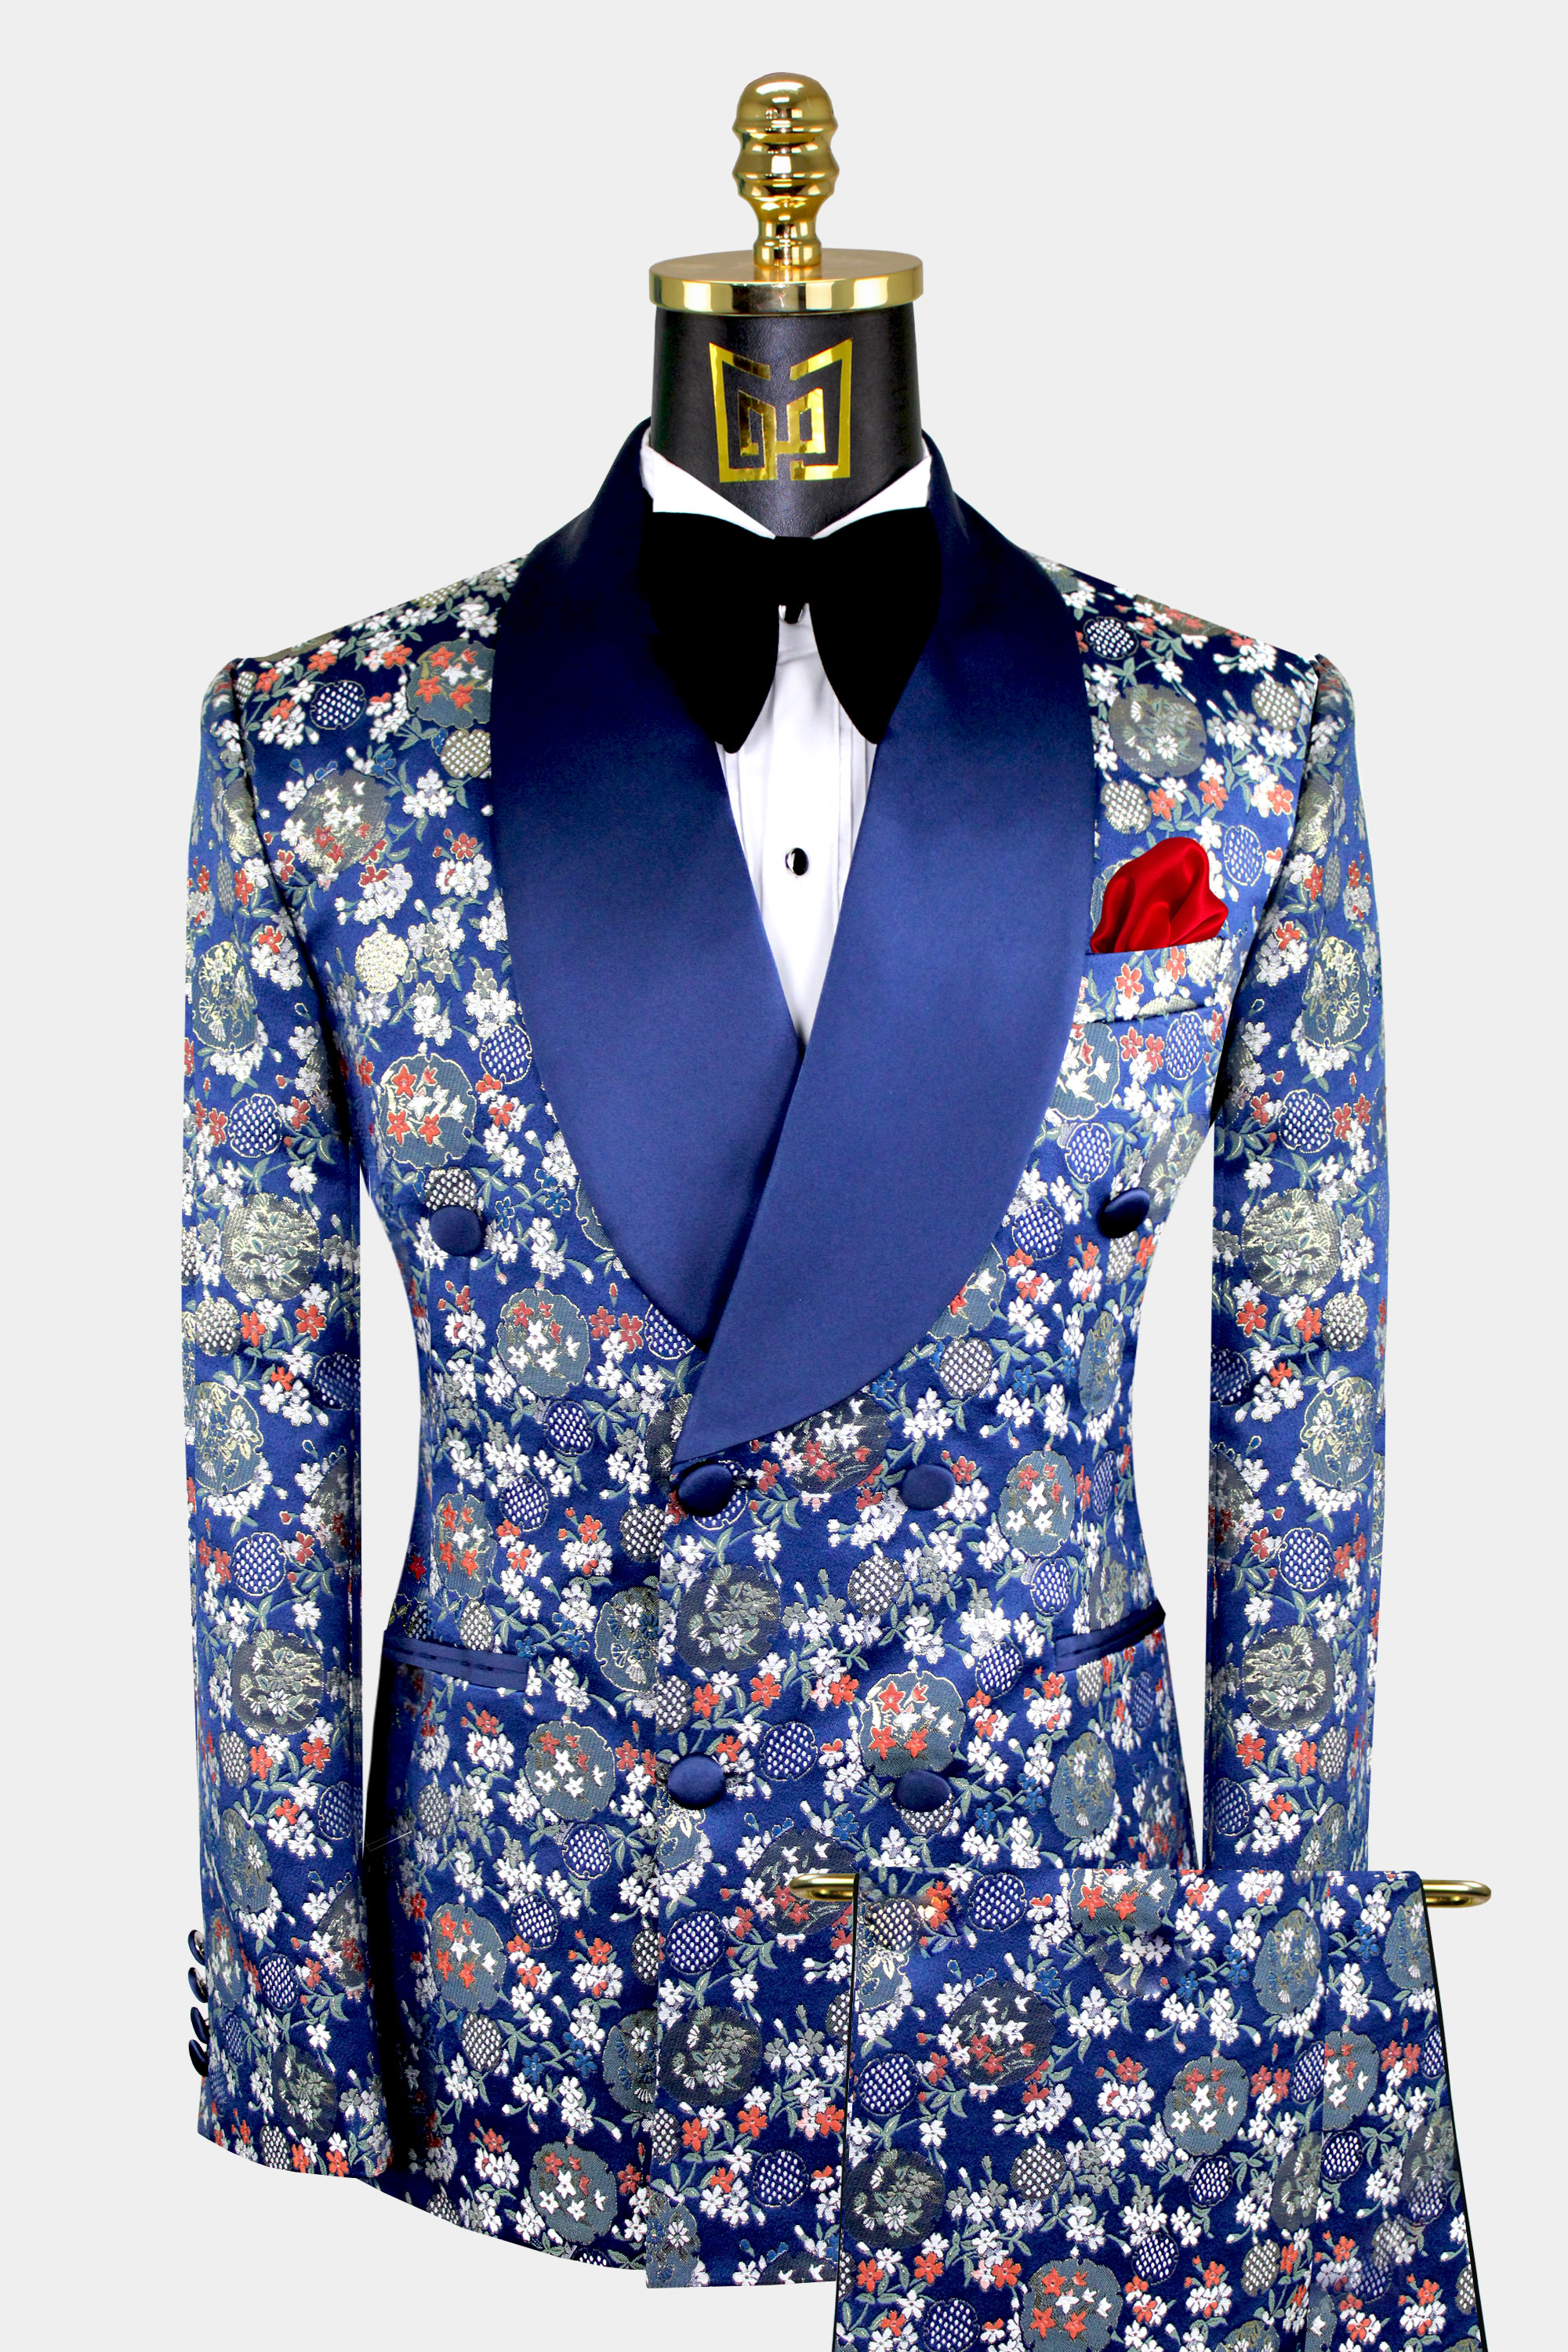 Mens-Navy-Blue-Floral-Tuxedo-Groom-Wedding-Prom-Suit-from-Gentlemansguru.com